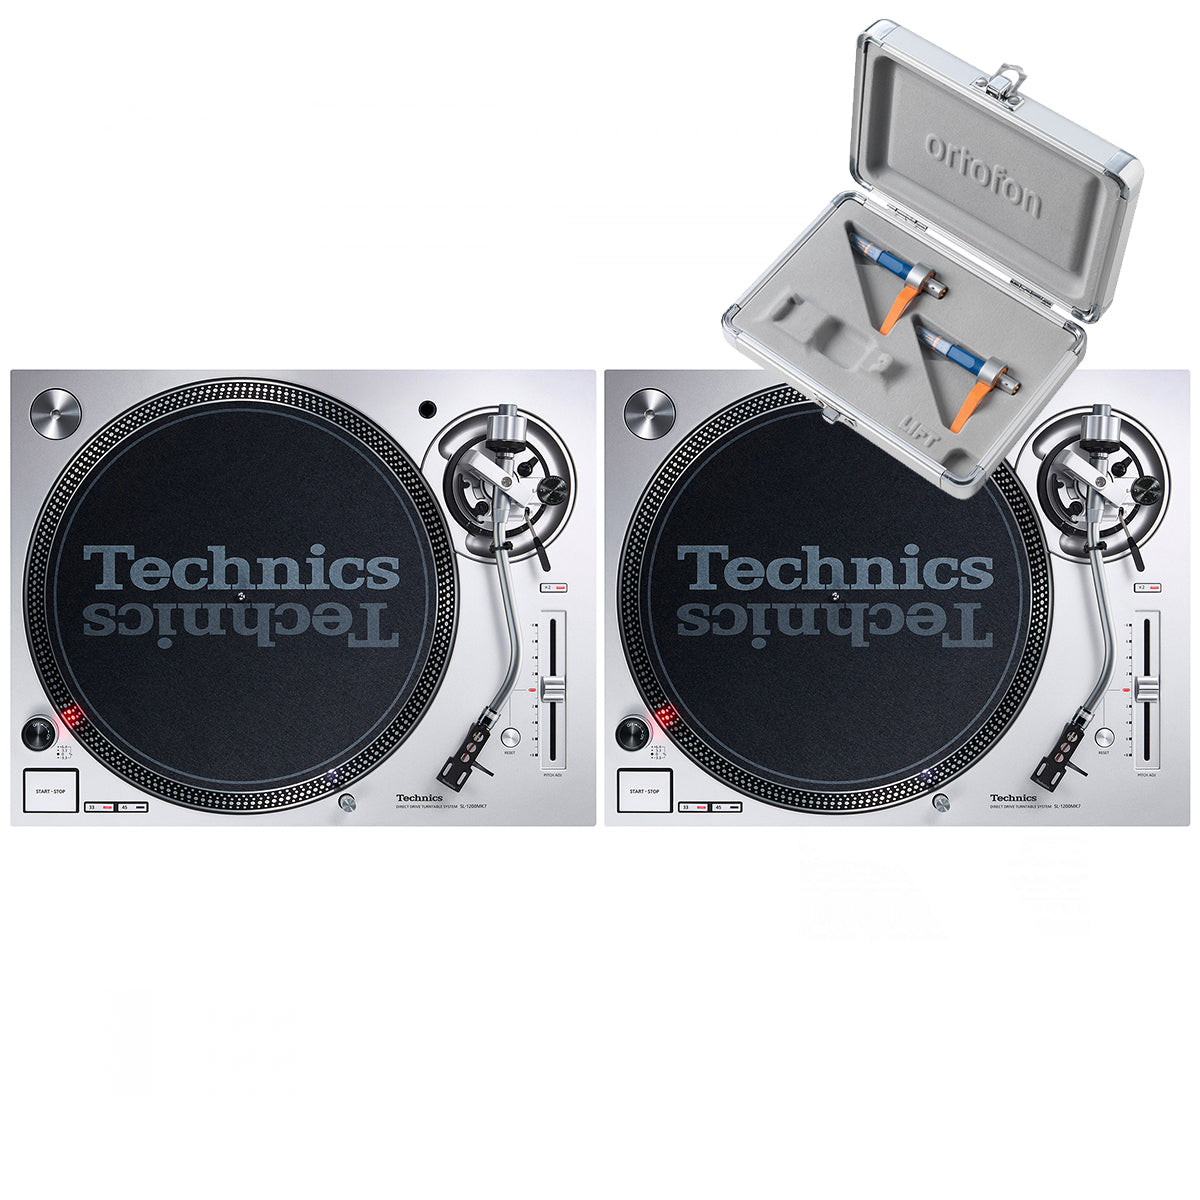 Technics SL1200 MK7 Pair + Concorde DJ MK2 Twin Pack